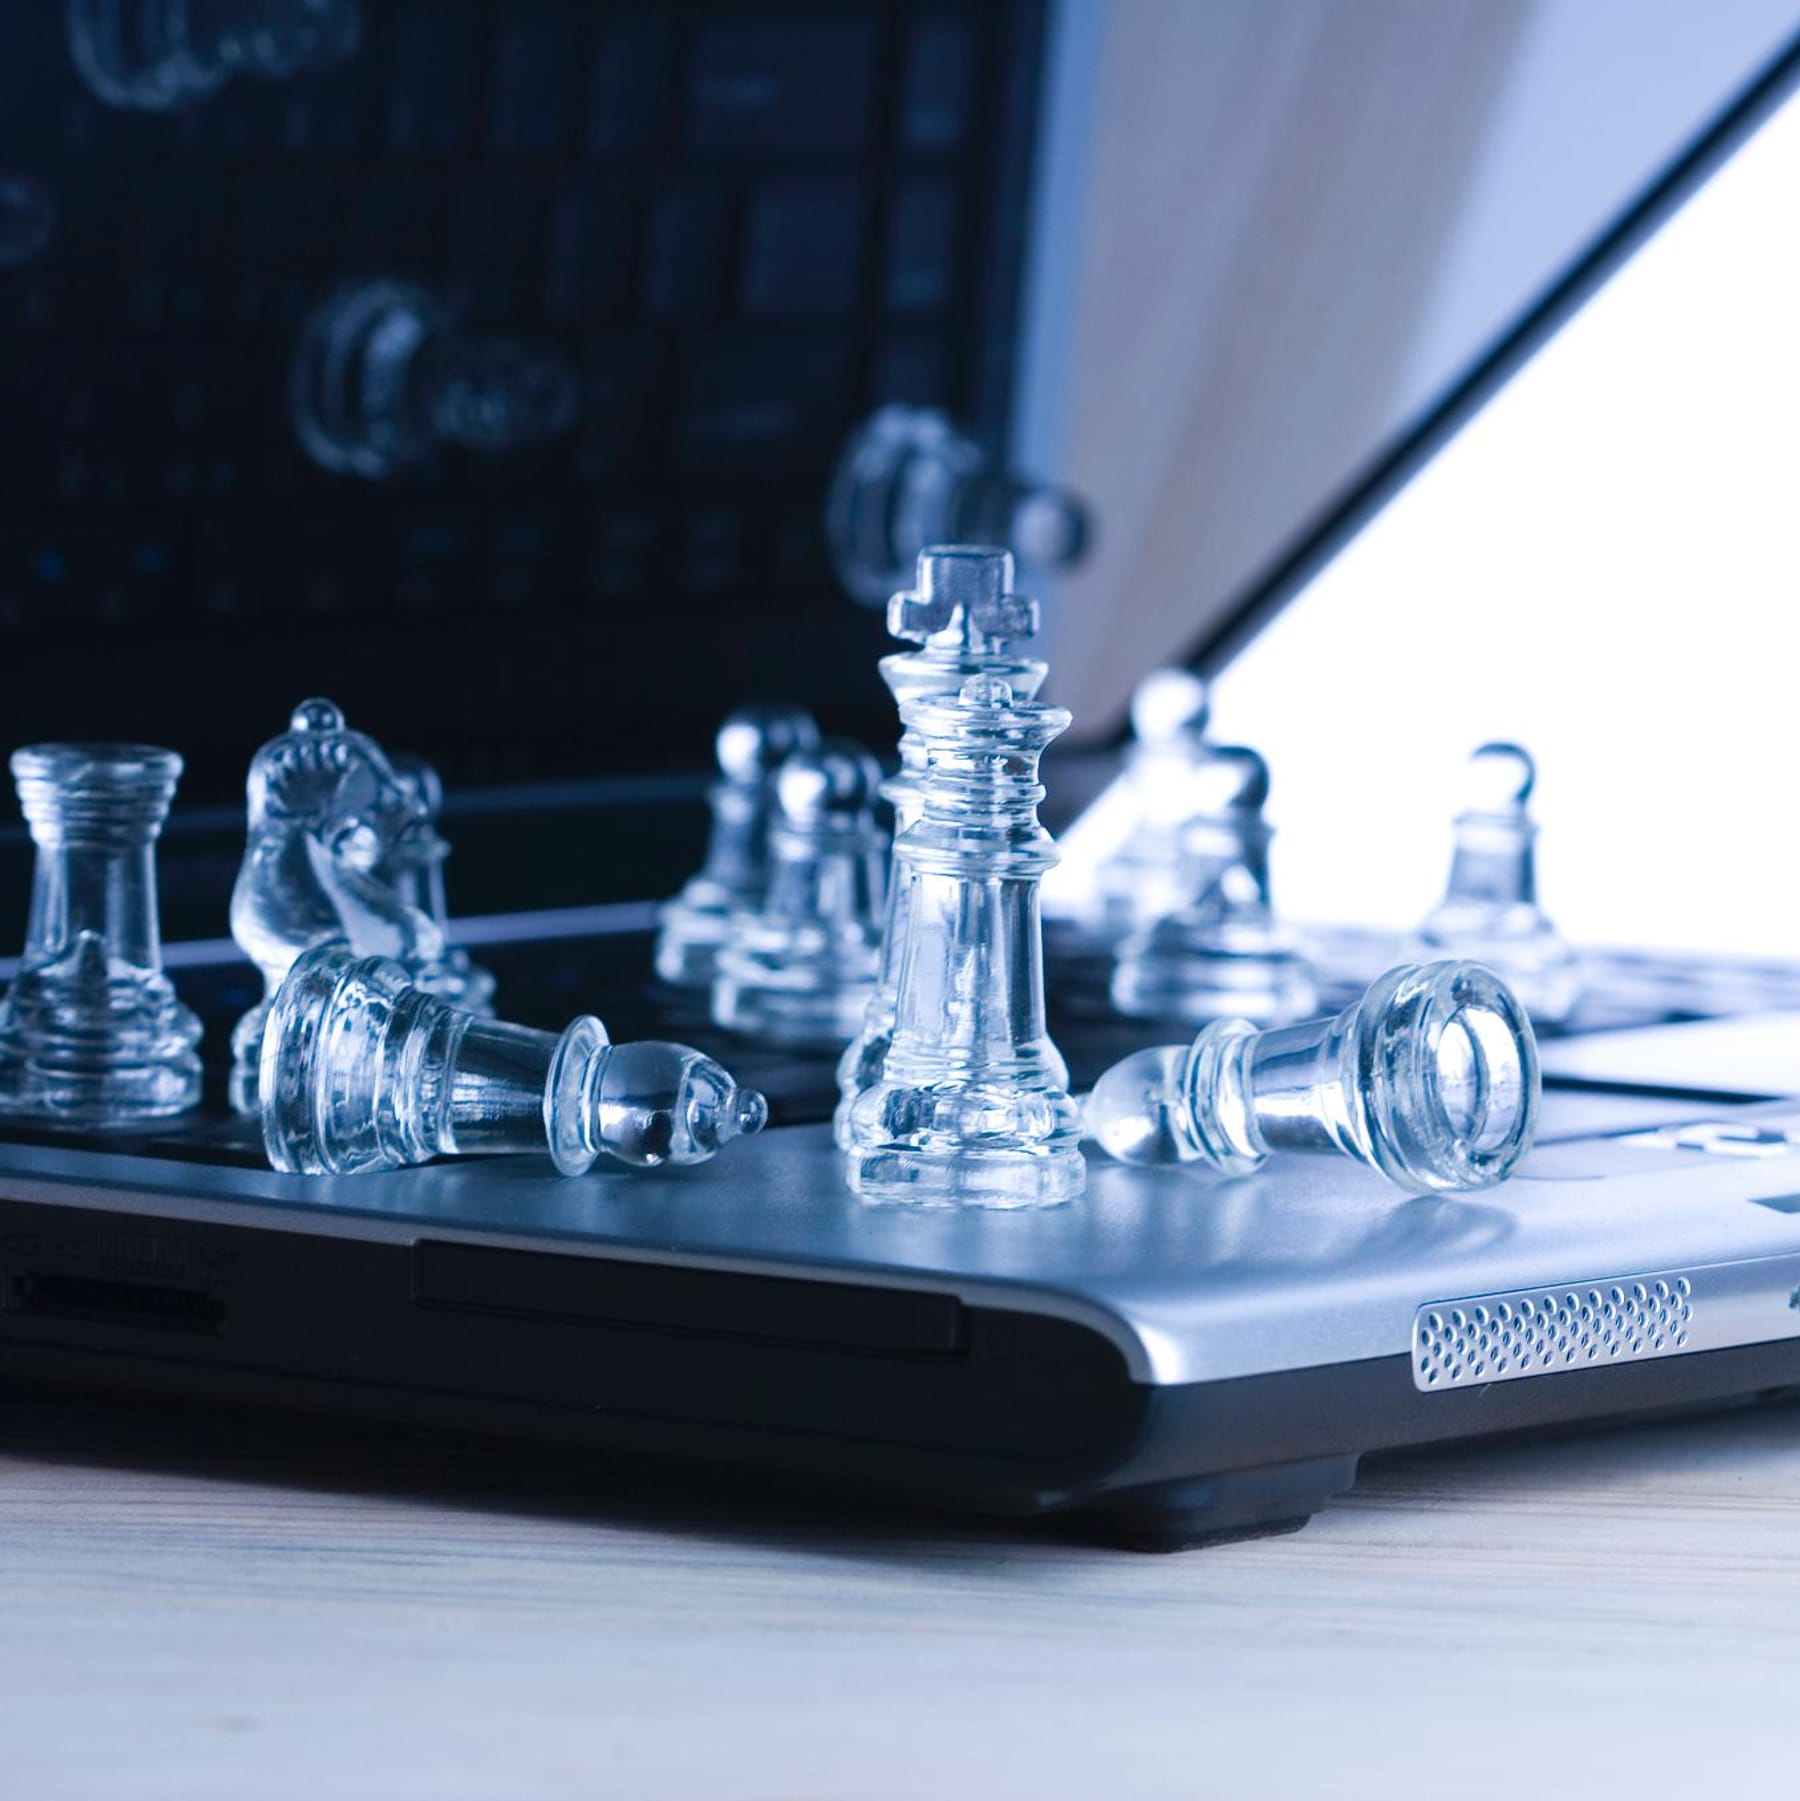 online schach gegen echte gegner